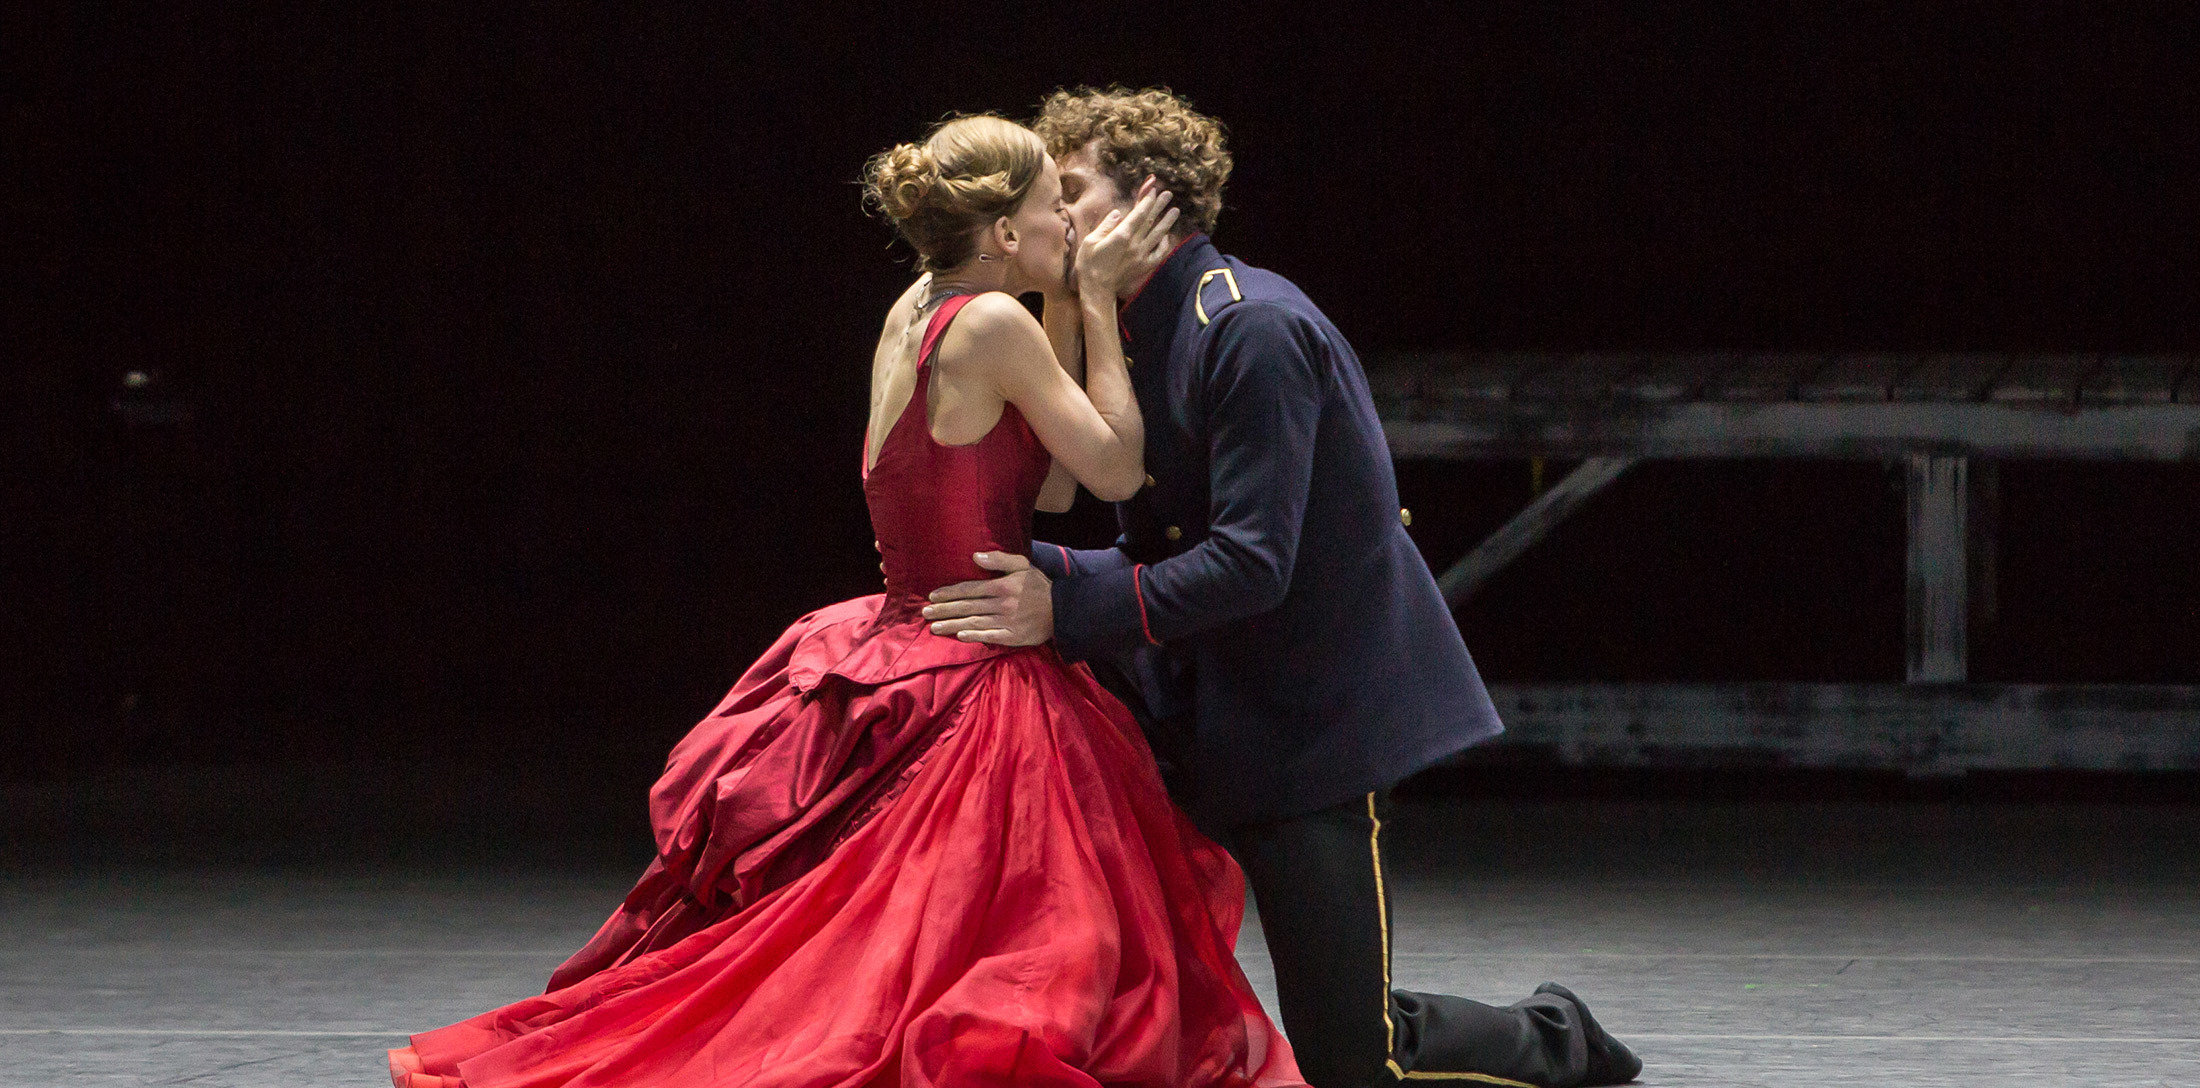 Katja Wünsche and William Moore of Ballett Zürich in Anna Karenina.